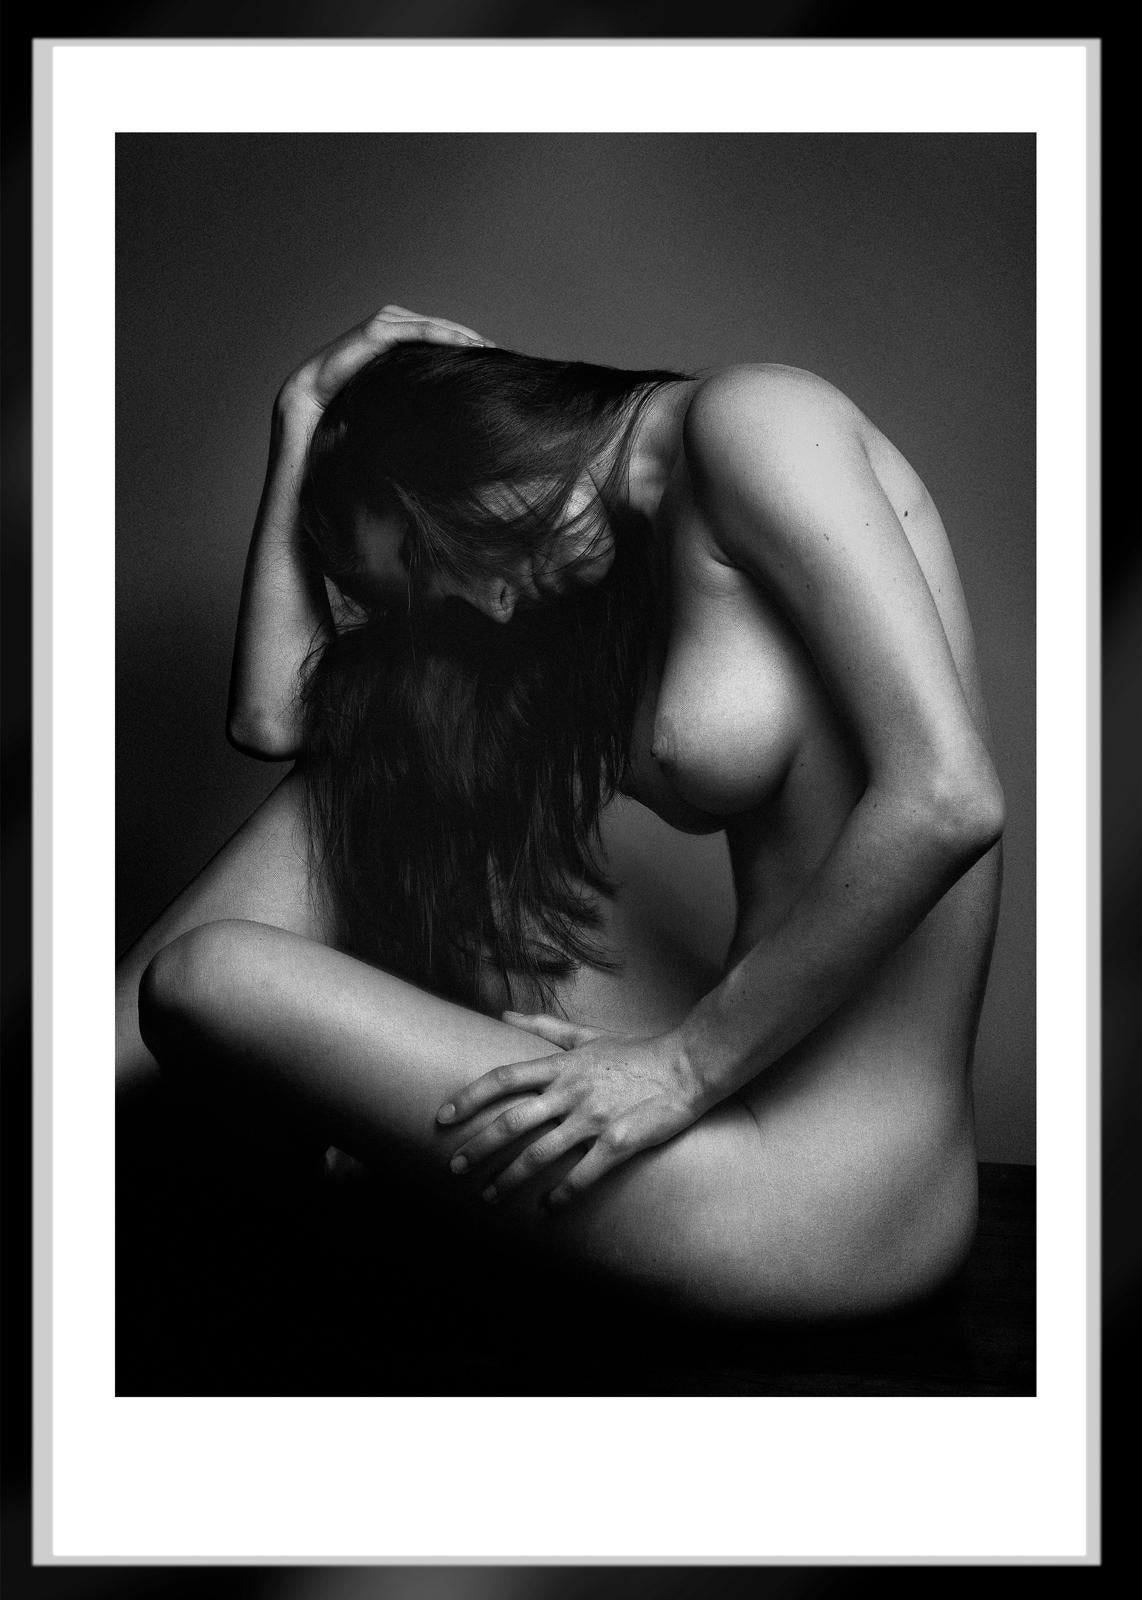 Sophie – signierter Aktdruck in limitierter Auflage, schwarz-weiß,Sexuell, zeitgenössisch (Schwarz), Black and White Photograph, von Ian Sanderson